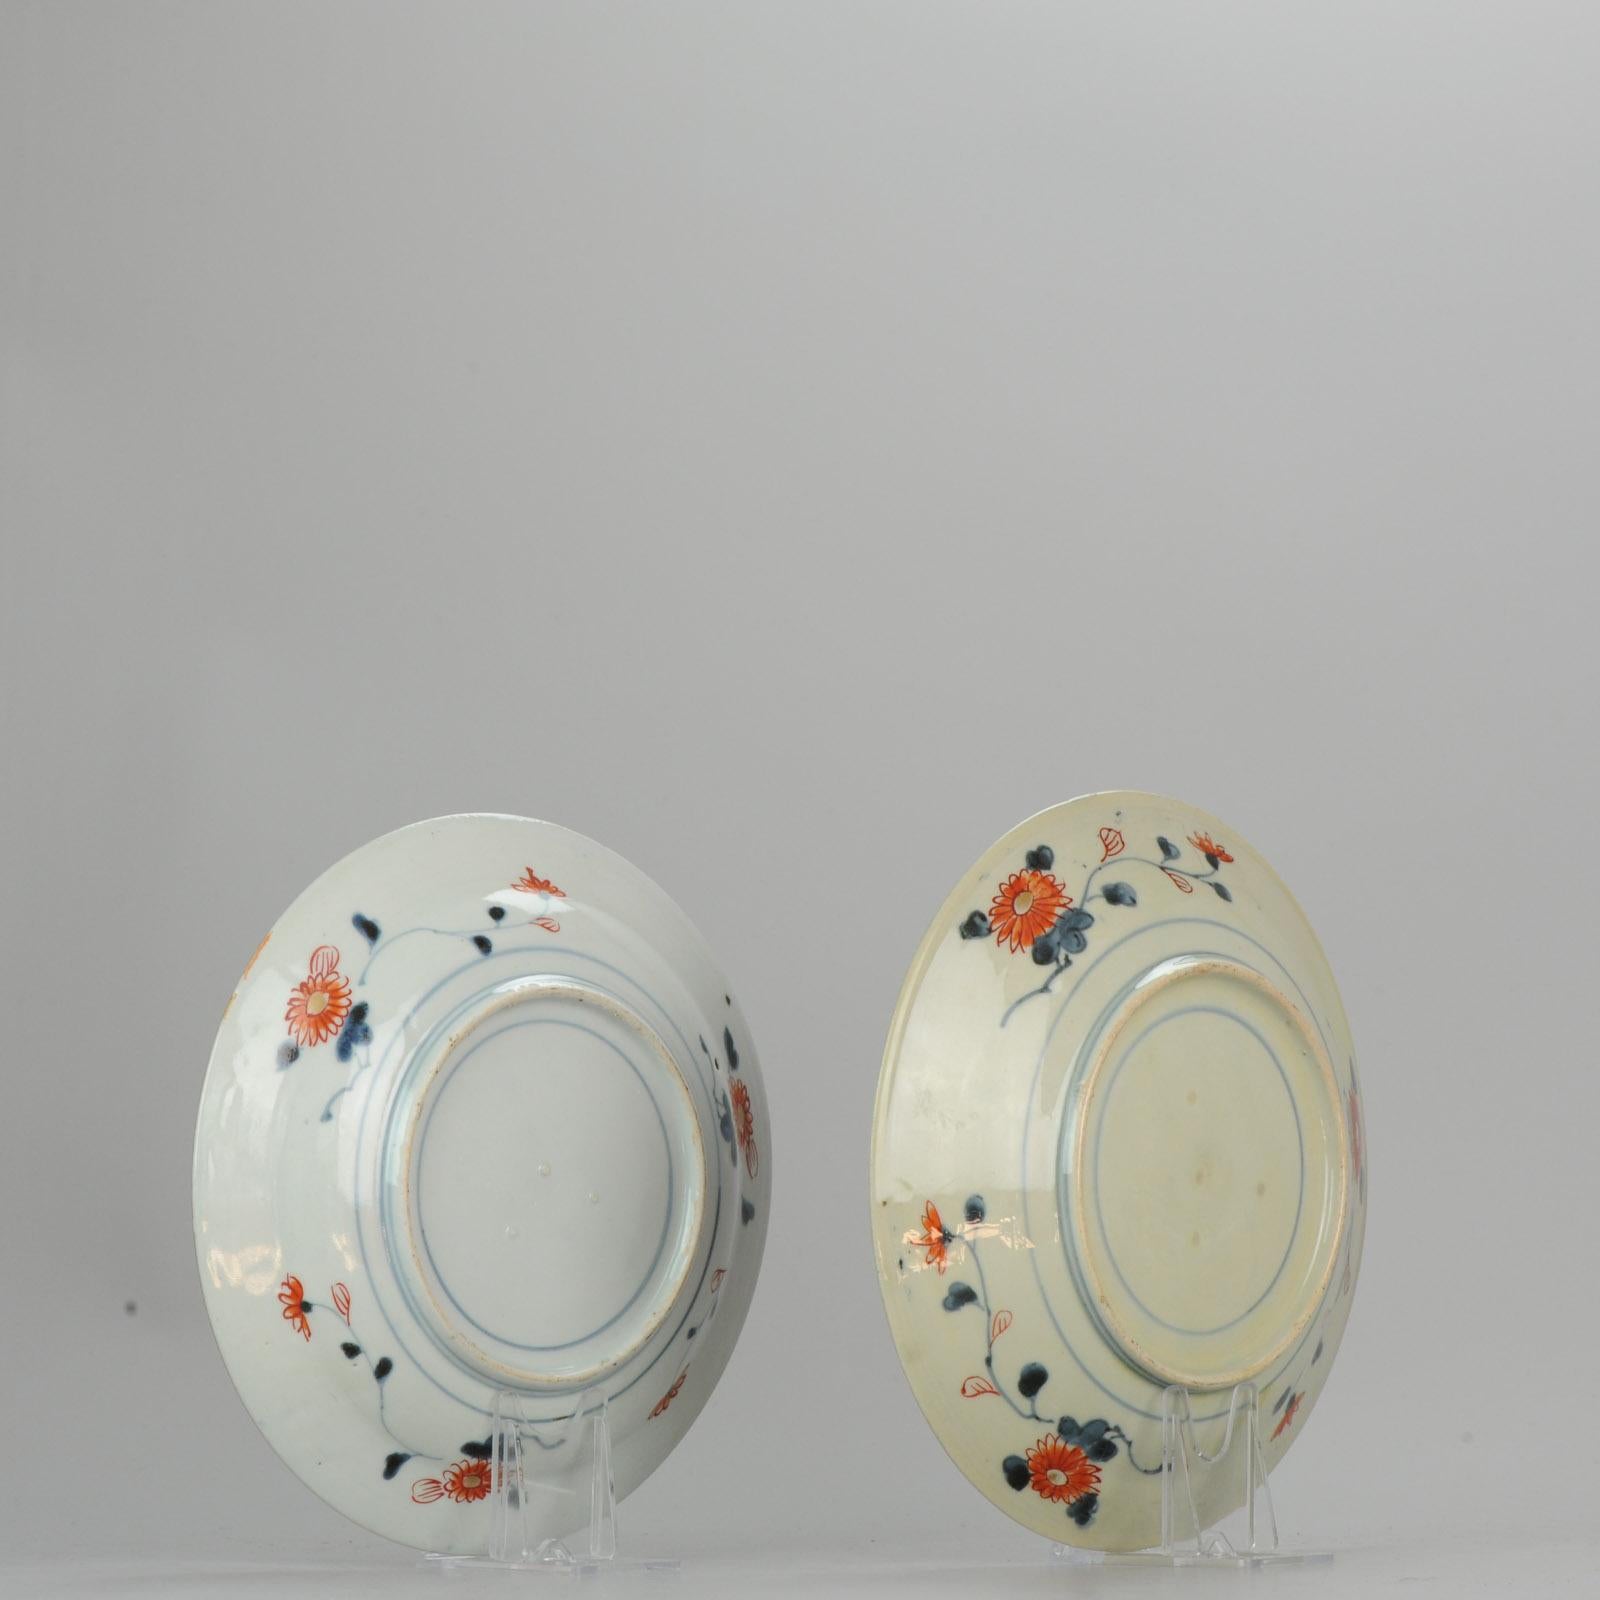 Antique circa 1700 Japanese Imari Porcelain Plates Arita Edo Flowers 1